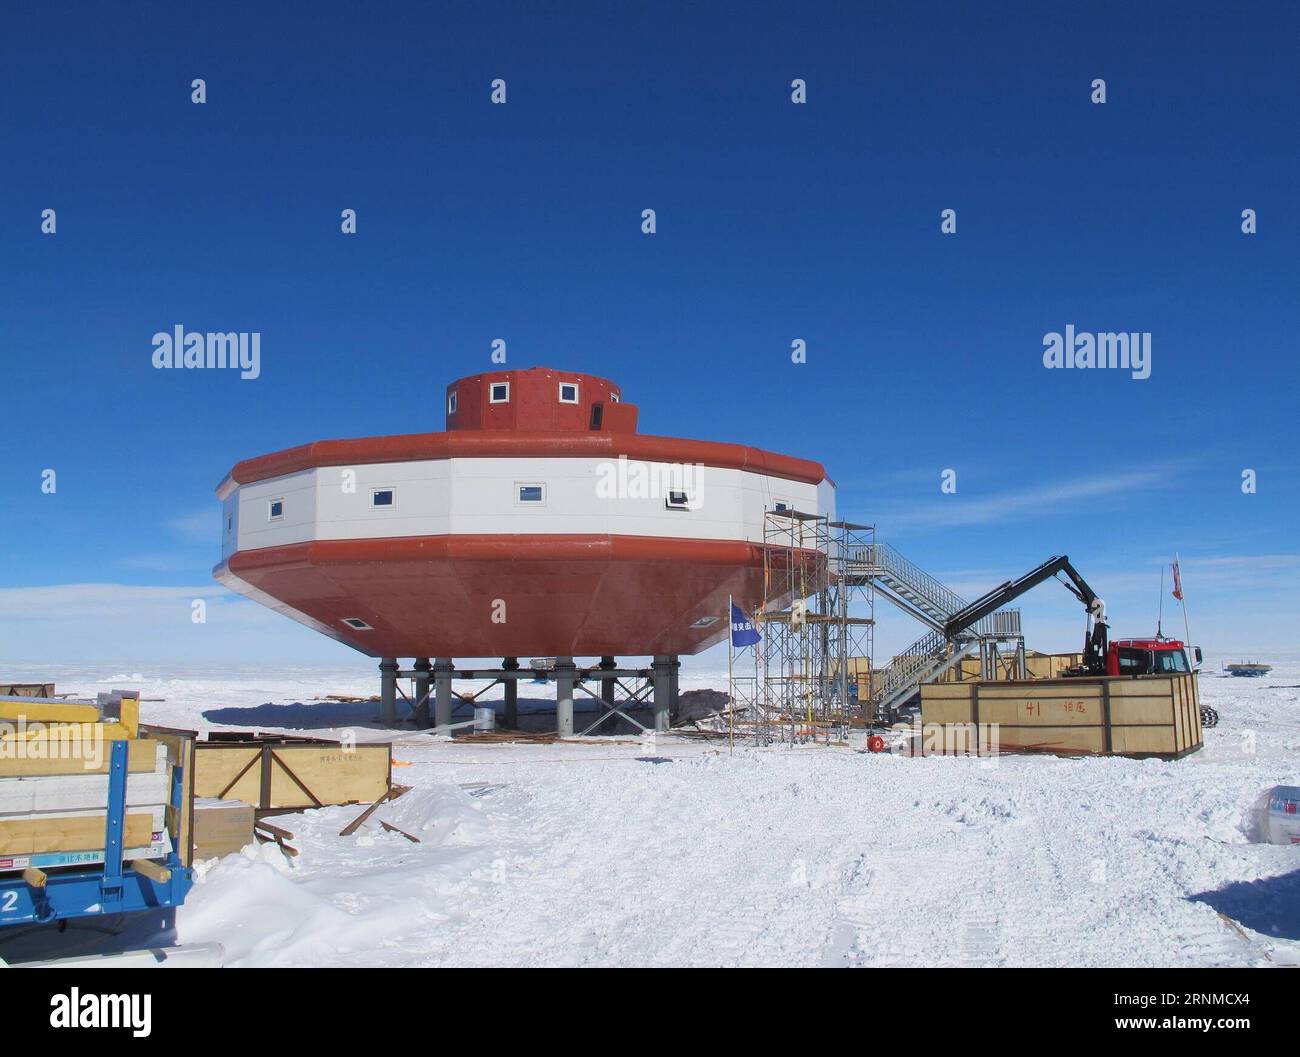 (170523) -- PECHINO, 23 maggio 2017 () -- foto scattata il 24 gennaio 2014 mostra la quarta base di ricerca antartica cinese, la stazione di Taishan, in costruzione. La stazione di Taishan è stata aperta l'8 febbraio 2014. La Cina ha pubblicato lunedì il primo rapporto completo sul suo sviluppo in Antartide negli ultimi tre decenni, intitolato China S Antarctic Activities. Secondo il rapporto, negli ultimi 30 anni, la Cina ha aperto quattro basi di ricerca -- la stazione della grande Muraglia, la stazione di Zhongshan, la stazione di Kunlun e la stazione di Taishan -- e ha fondato il Polar Research Institute of China a Shanghai oltre alla vela Foto Stock